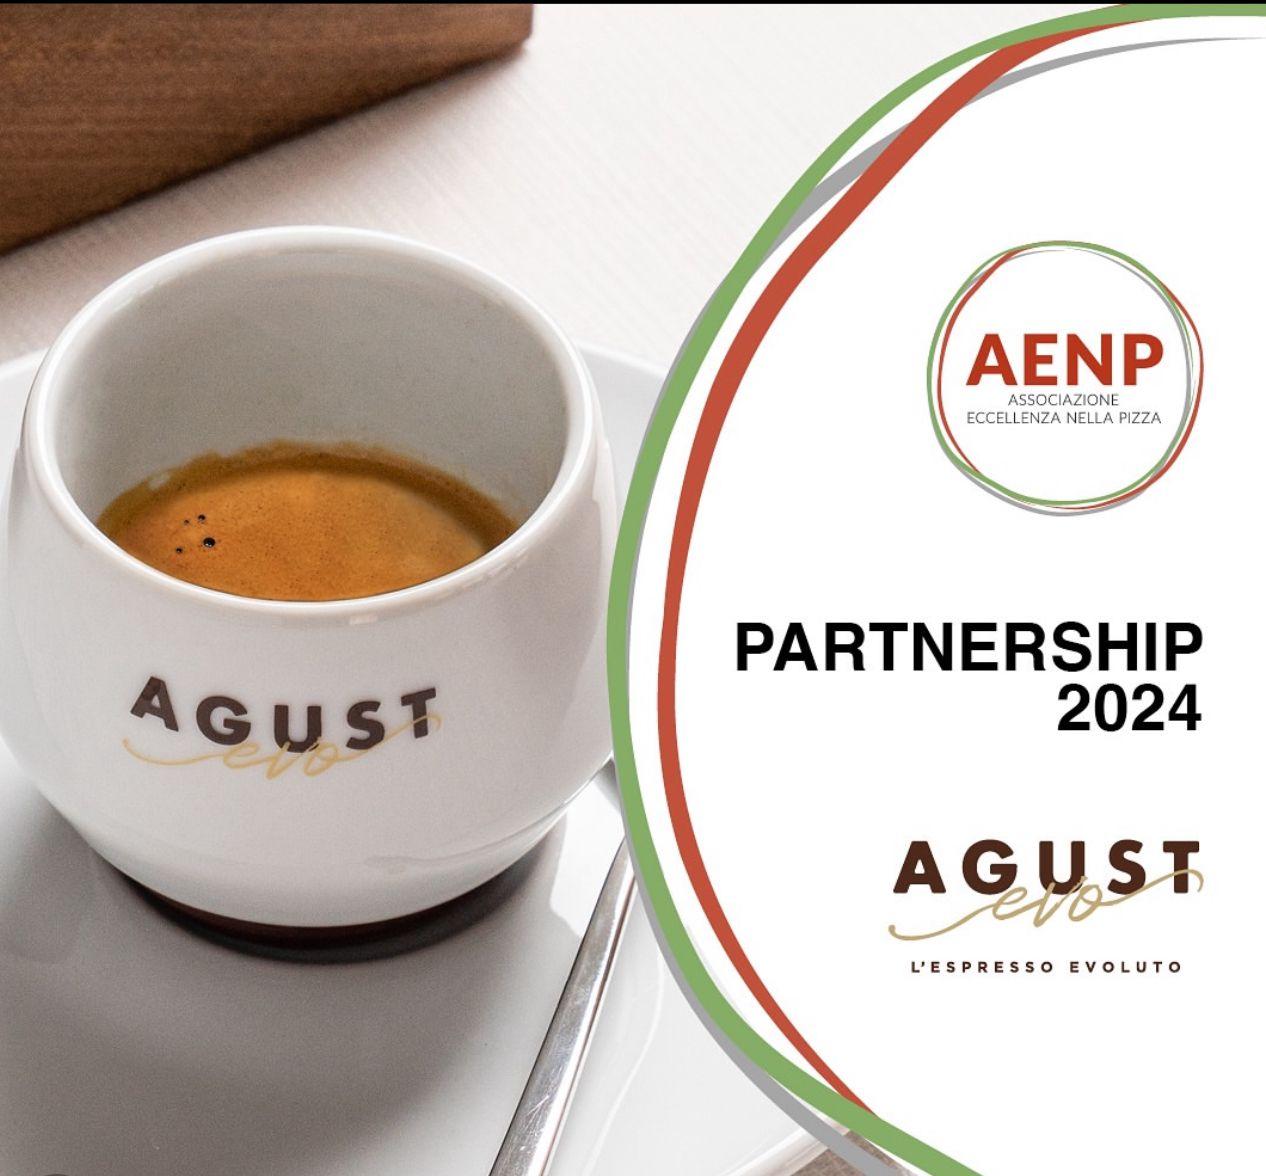 Caffè Agust partner di AENP